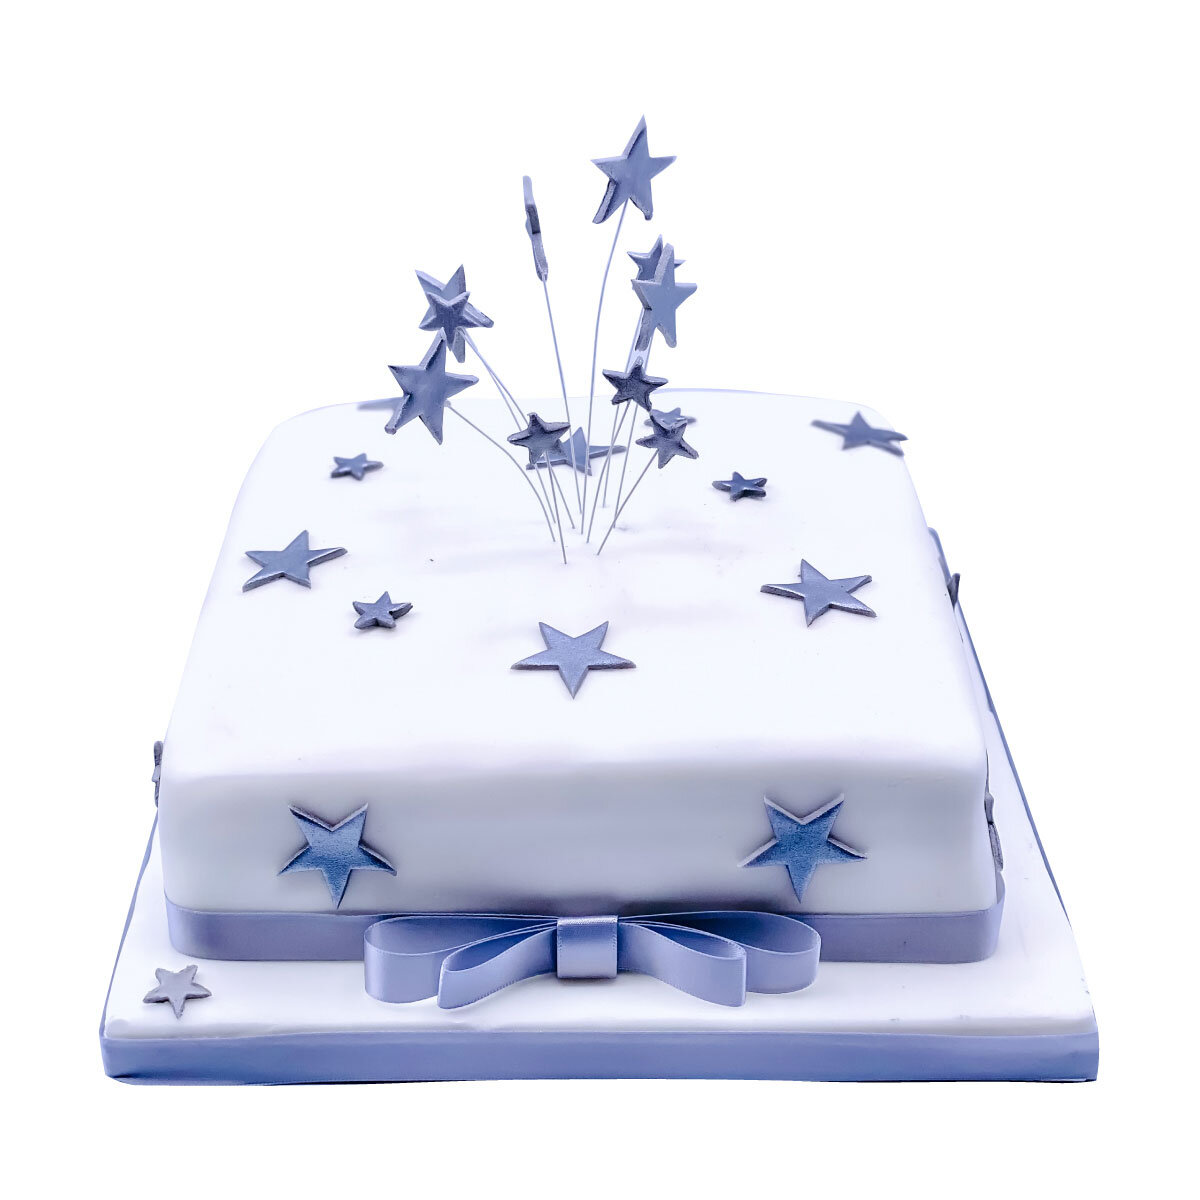 Star cake lifestyle image showing slice